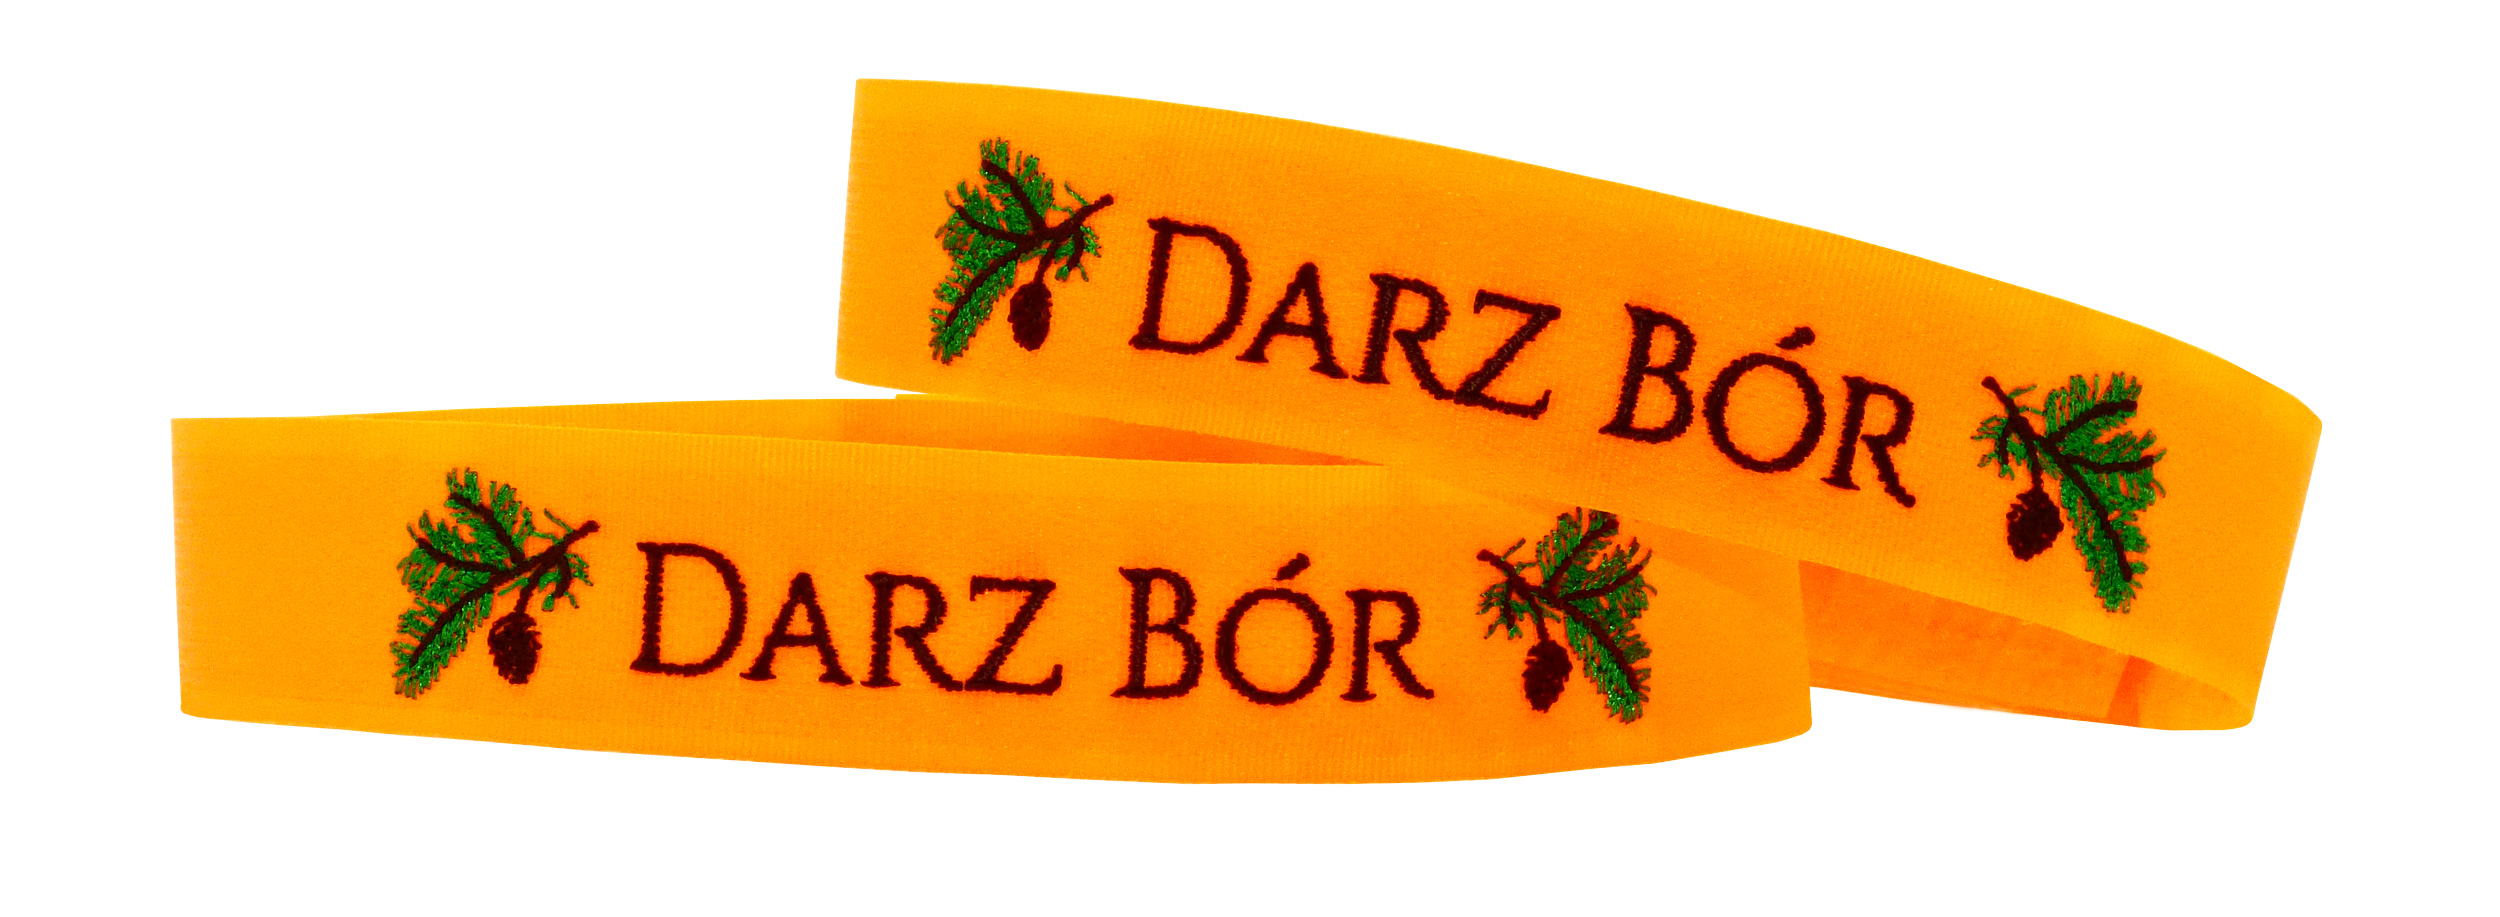 Охотничий головной убор с вышивкой DARZ bor Collection головной убор DARZ bor